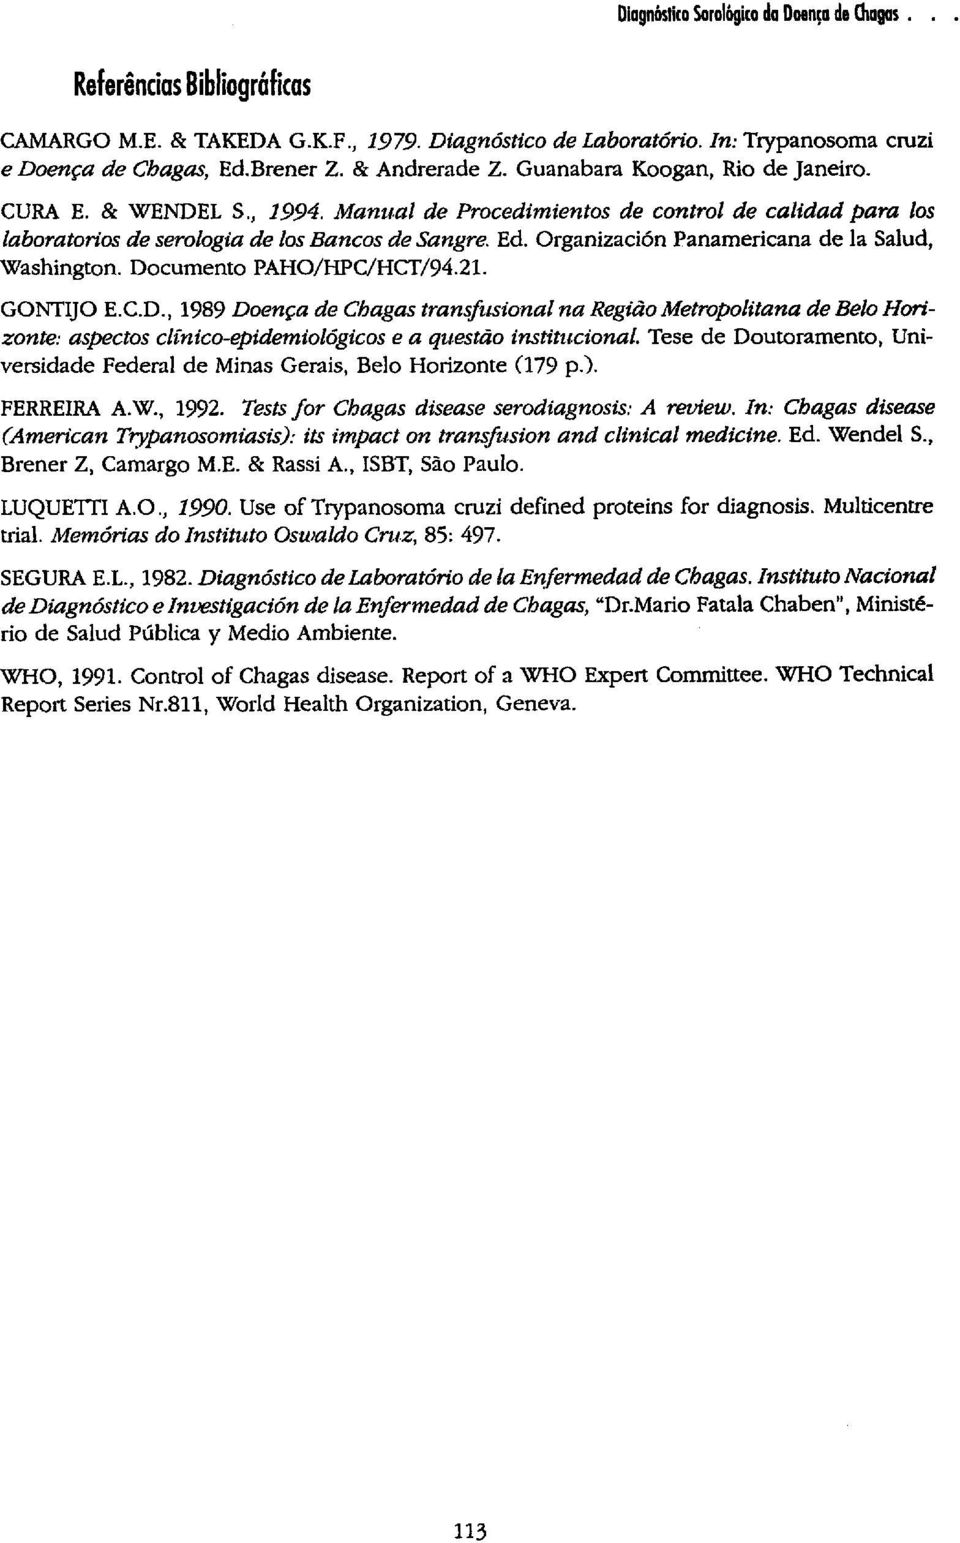 Documento PAHO/HPC/HCT/94.21. GONTIJO E.C.D., 1989 Doença de Chagas transfusional na Região Metropolitana de Belo Horizonte: aspectos clínico-epidemiológicos e a questão institucional.